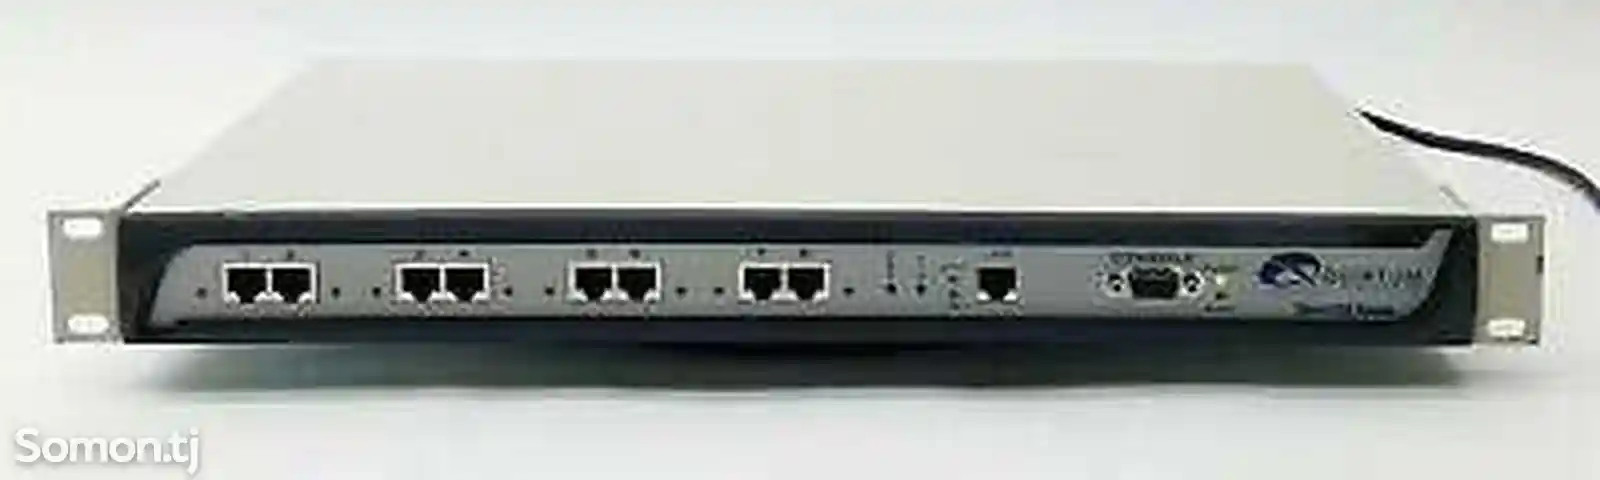 Шлюз Quintum Tenor DX Series DX4120 Gateway. VoIp-1